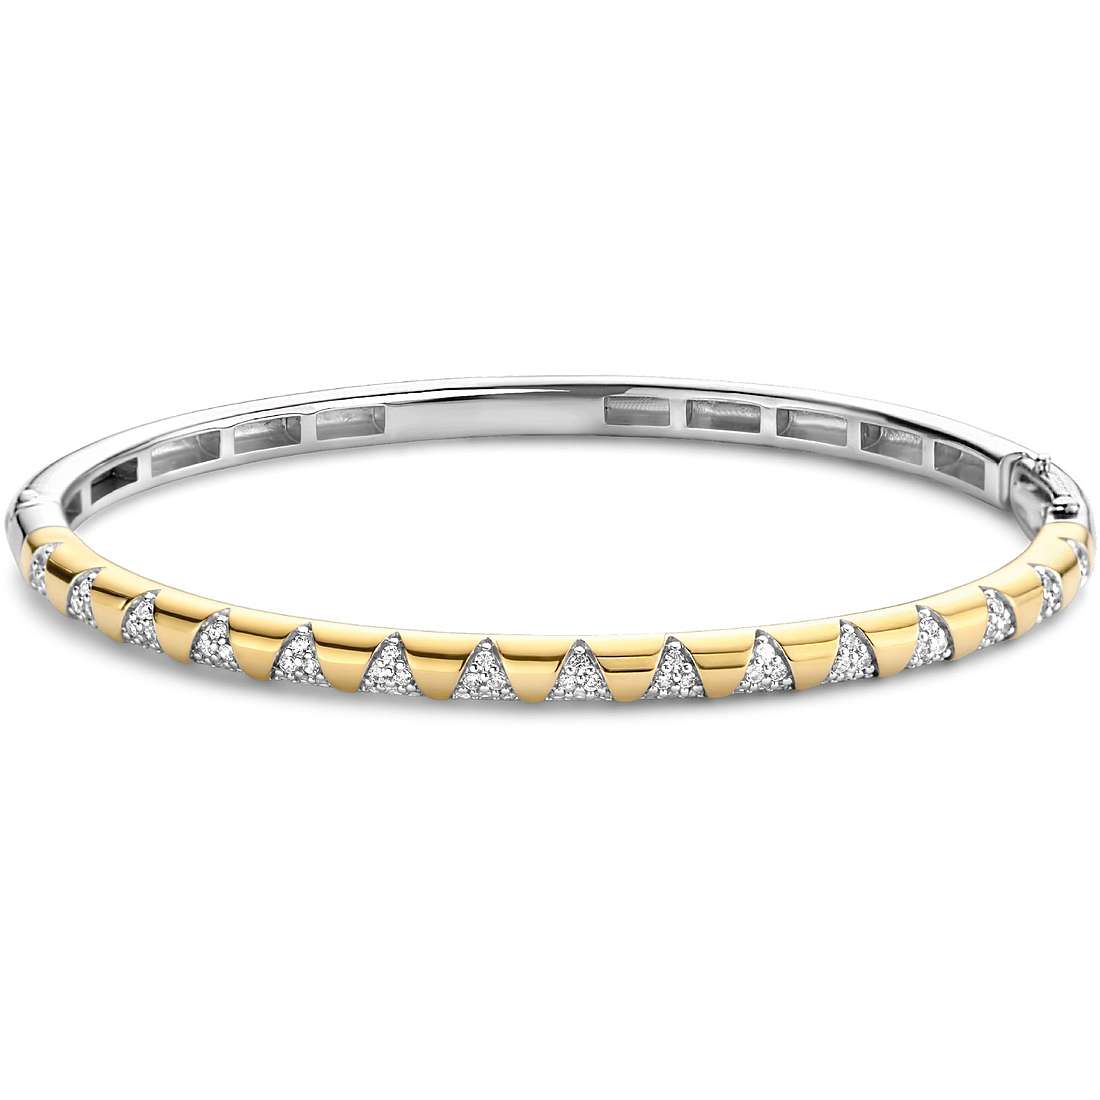 TI SENTO MILANO bracelet woman Bracelet with 925 Silver Bangle/Cuff jewel 2955ZY/S